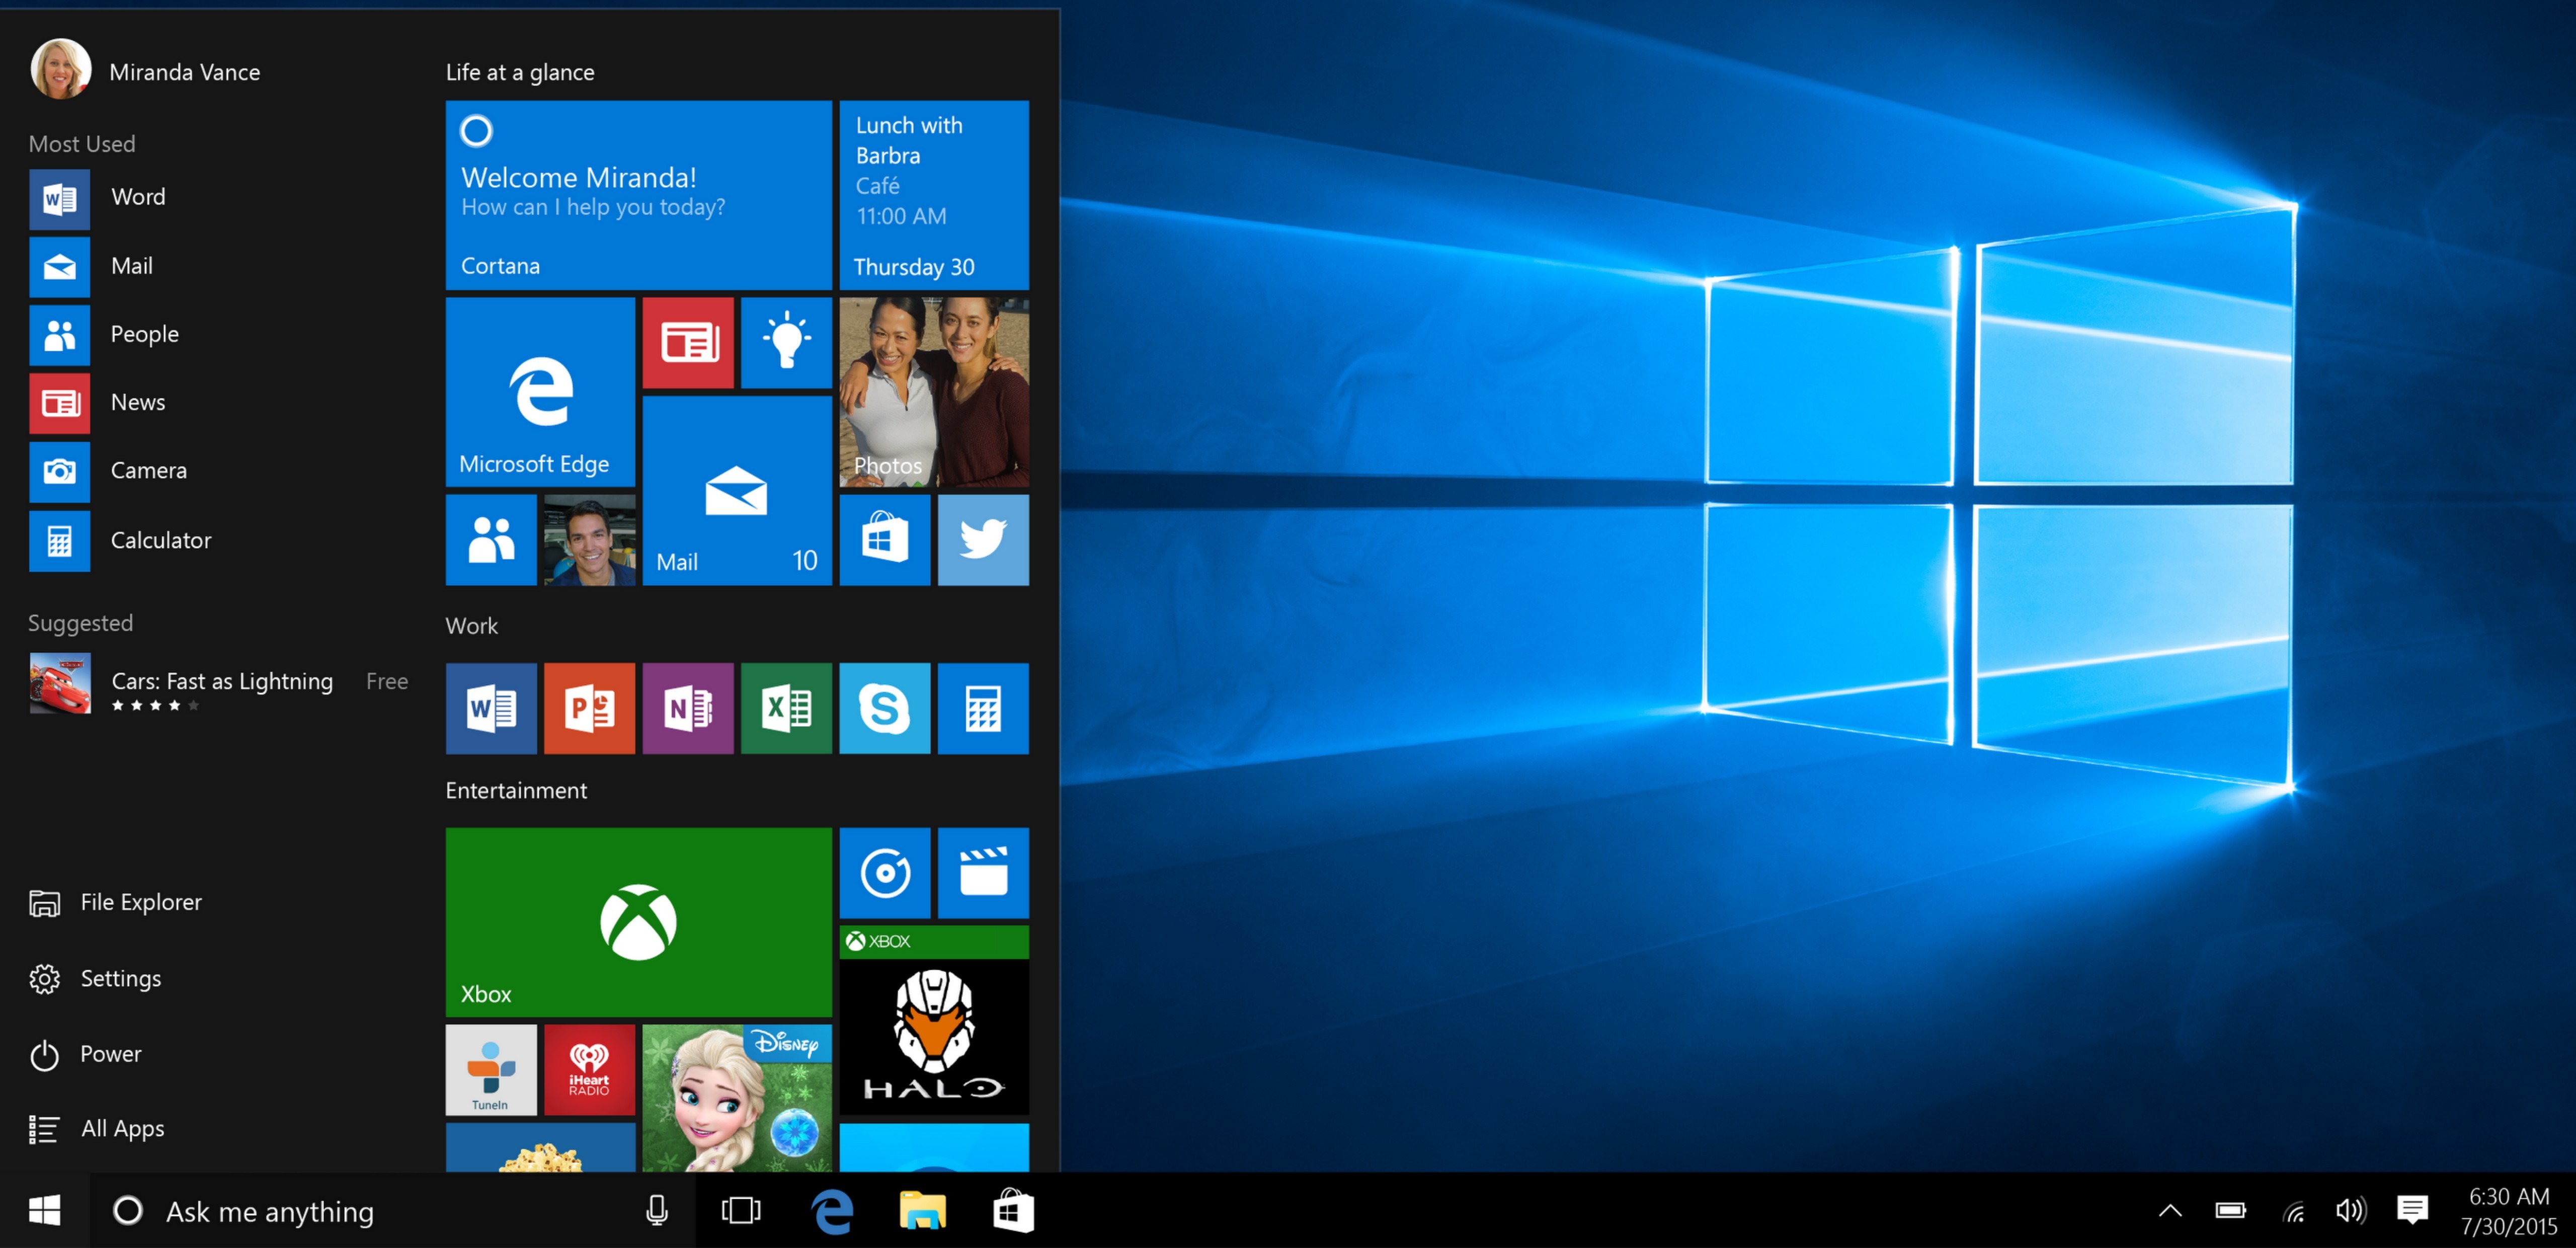 The Start menu in Windows 10